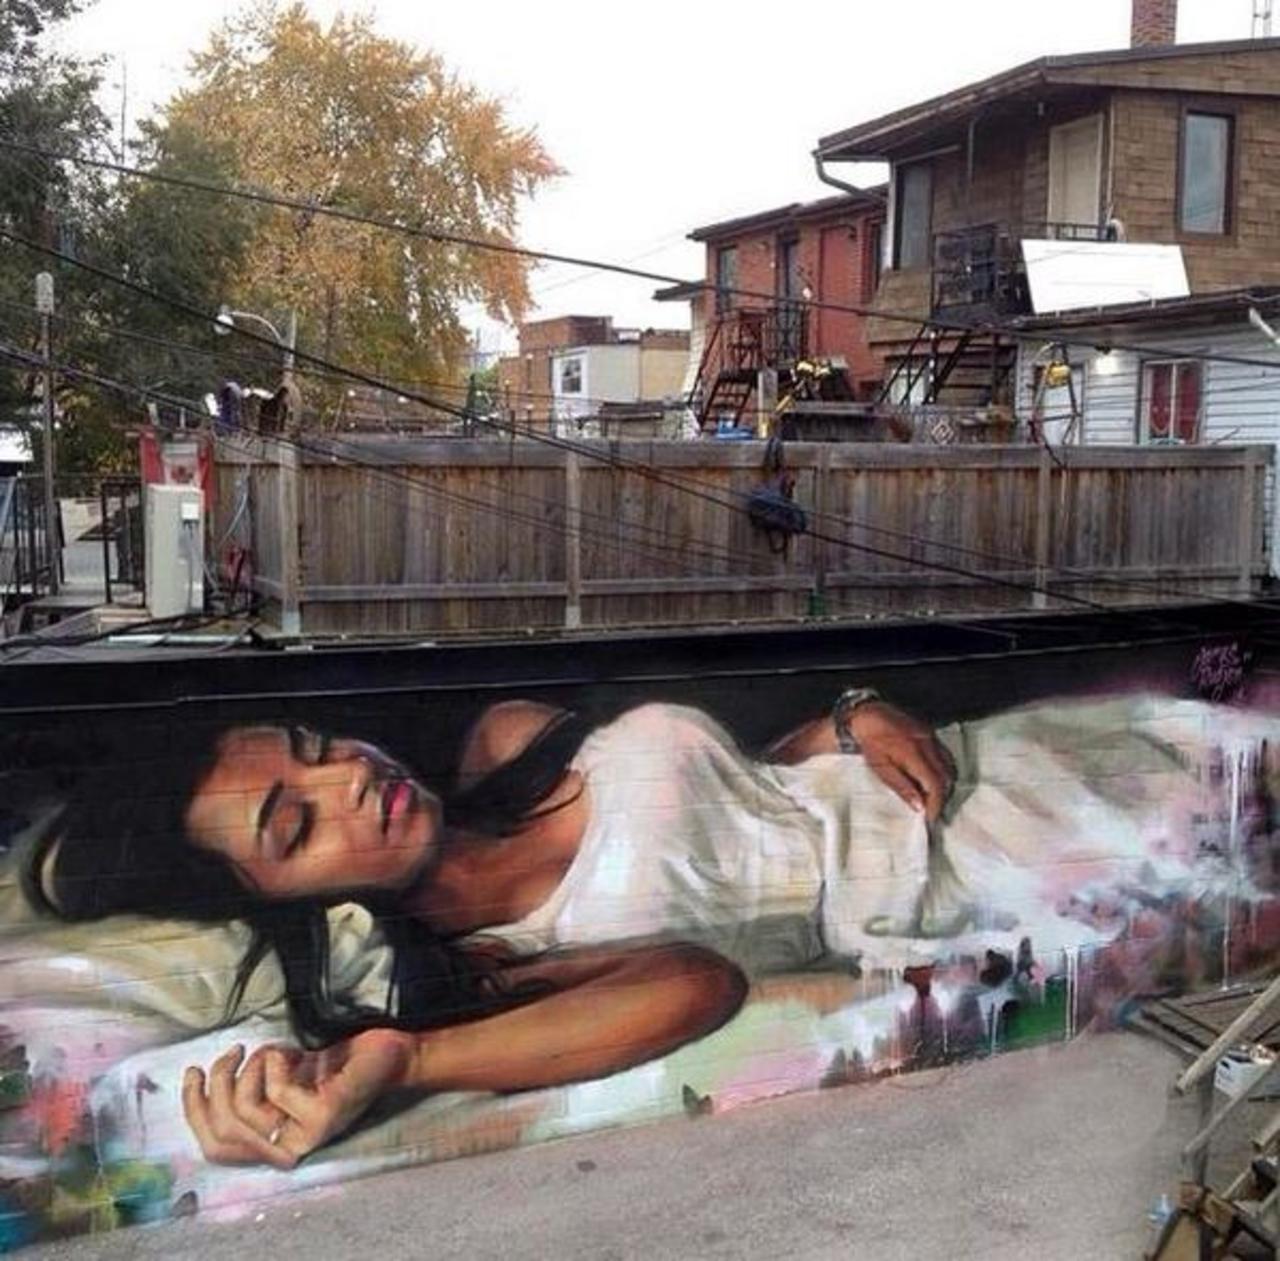 “@hypatia373: #art #streetart #graffiti http://t.co/vkr1TvvEAP”